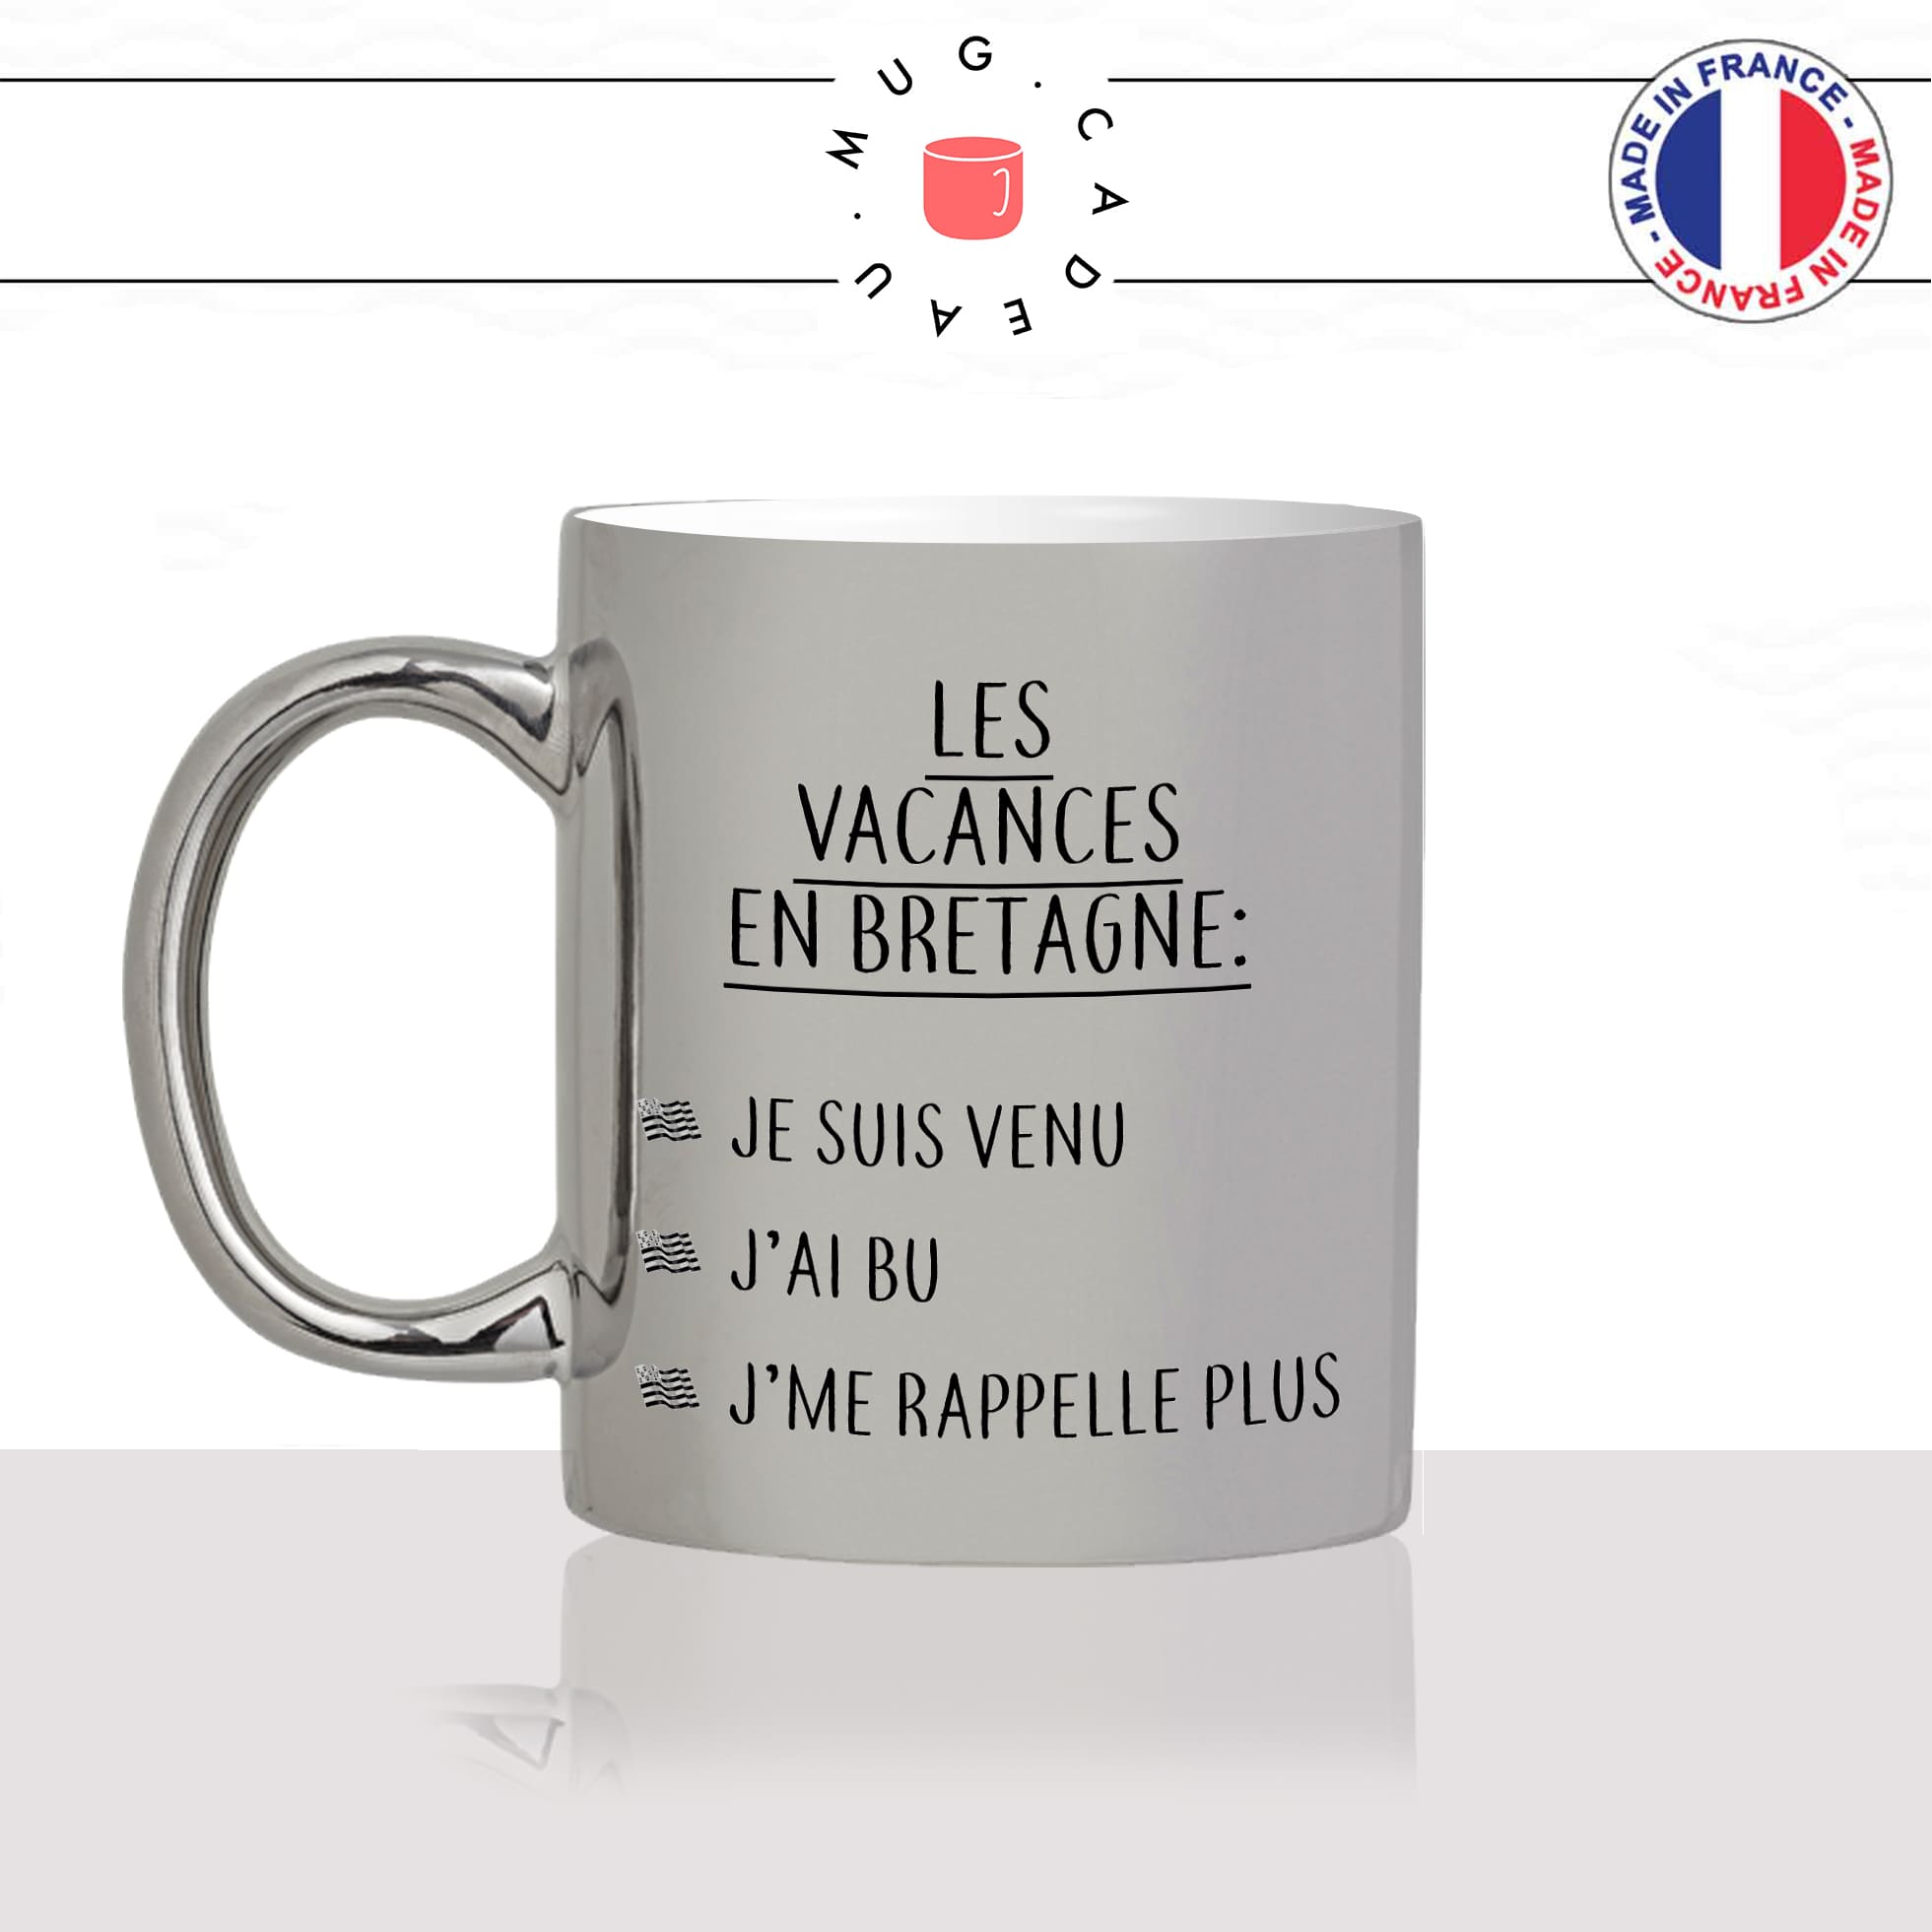 mug-tasse-argent-argenté-silver-vacances-en-bretagne-breton-apéro-jai-bu-rappelle-plus-humour-france-idée-cadeau-fun-cool-café-thé